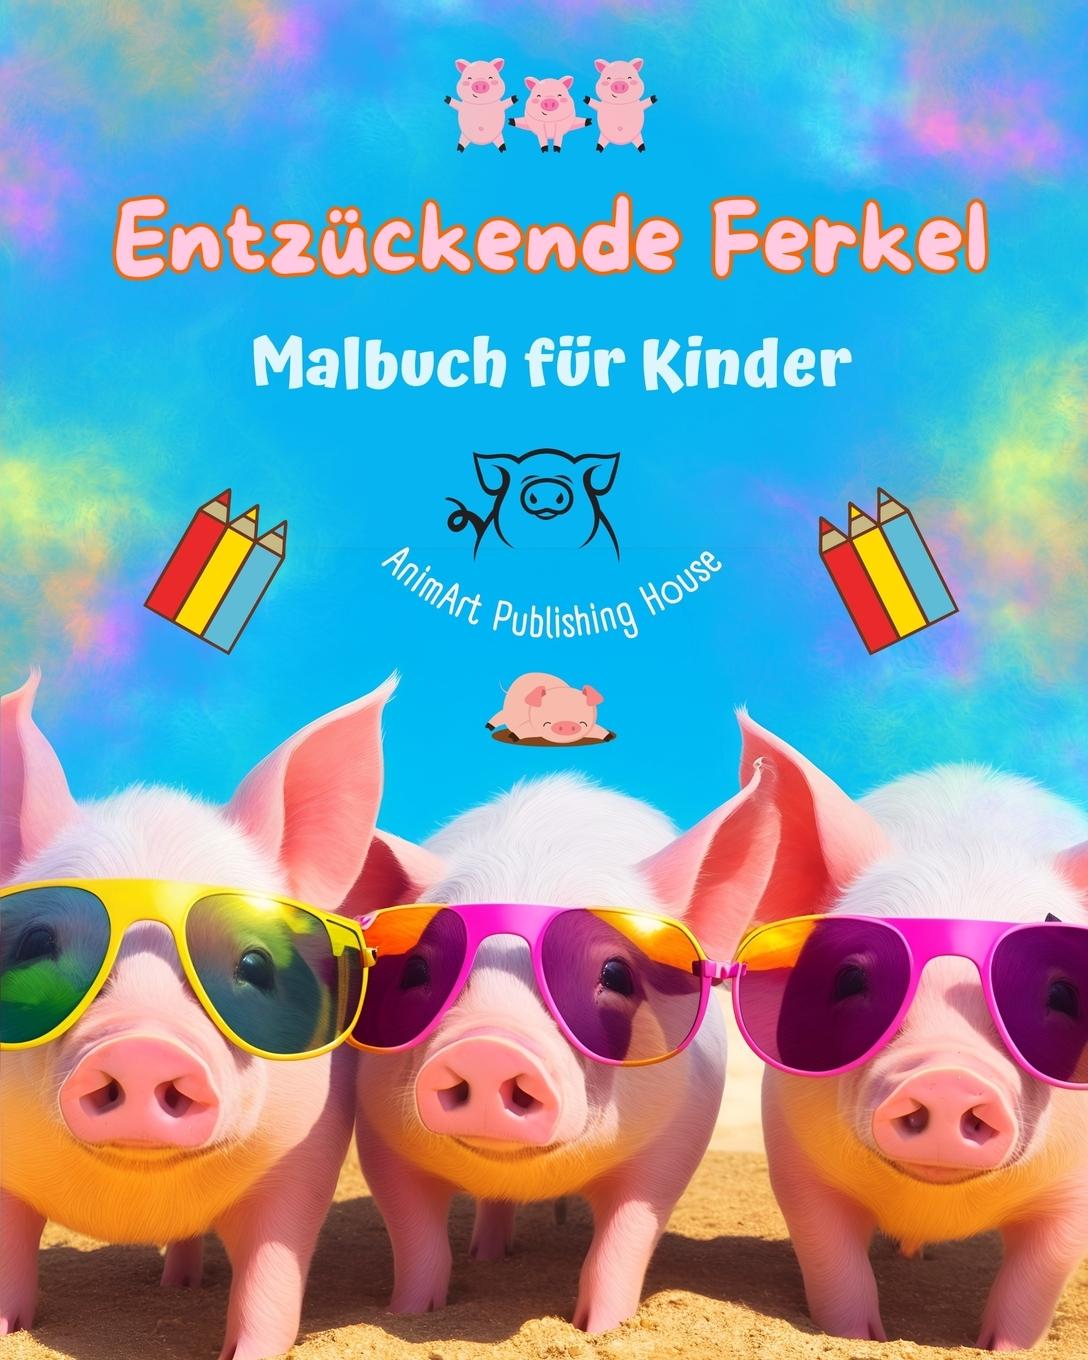 Book Entzückende Ferkel - Malbuch für Kinder - Kreative Szenen mit lustigen Schweinchen - Ideales Geschenk für Kinder 